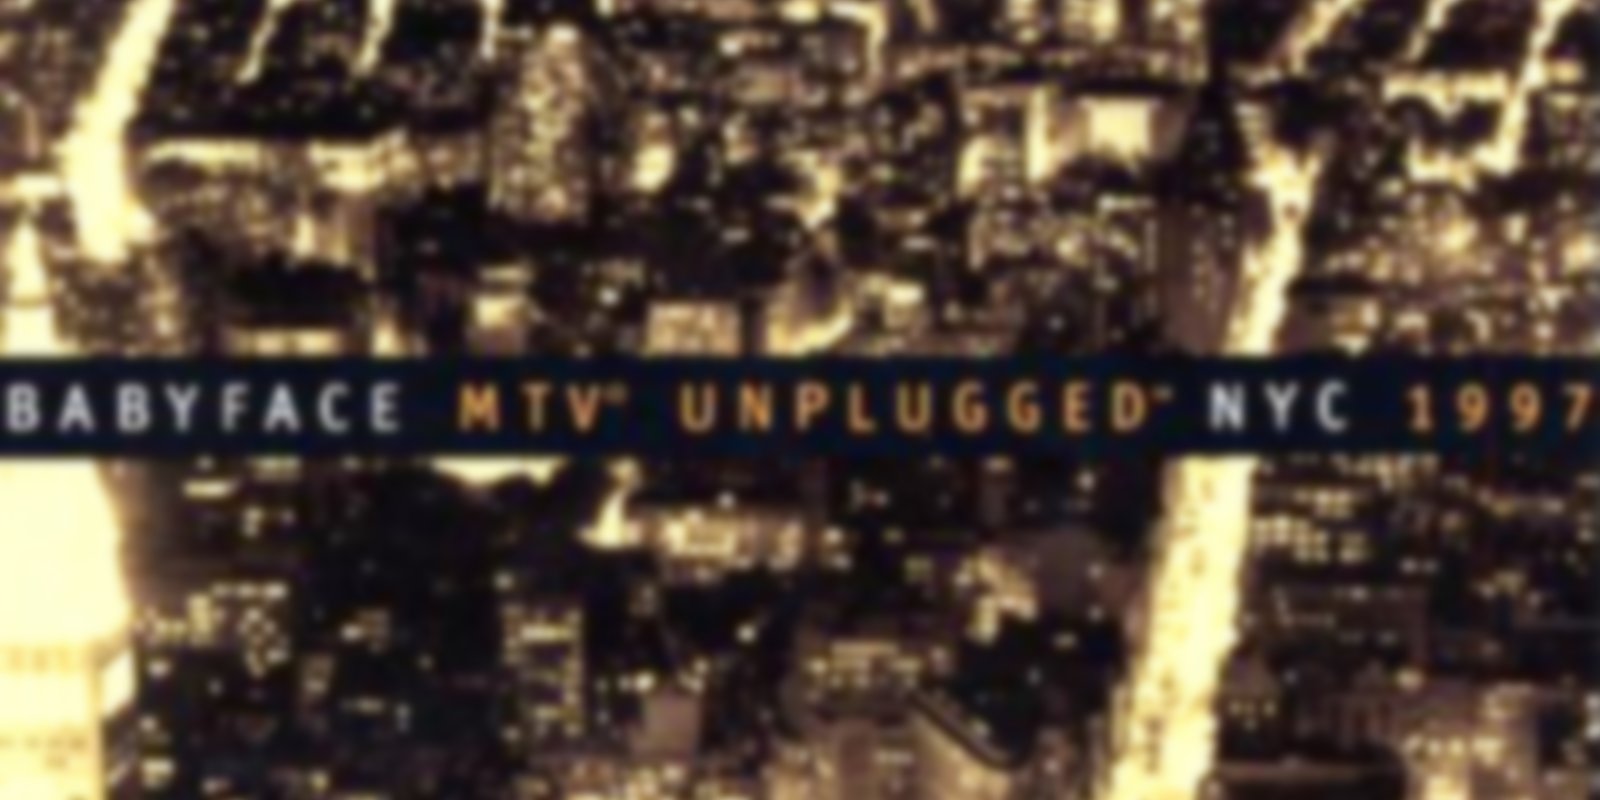 MTV Unplugged - Babyface